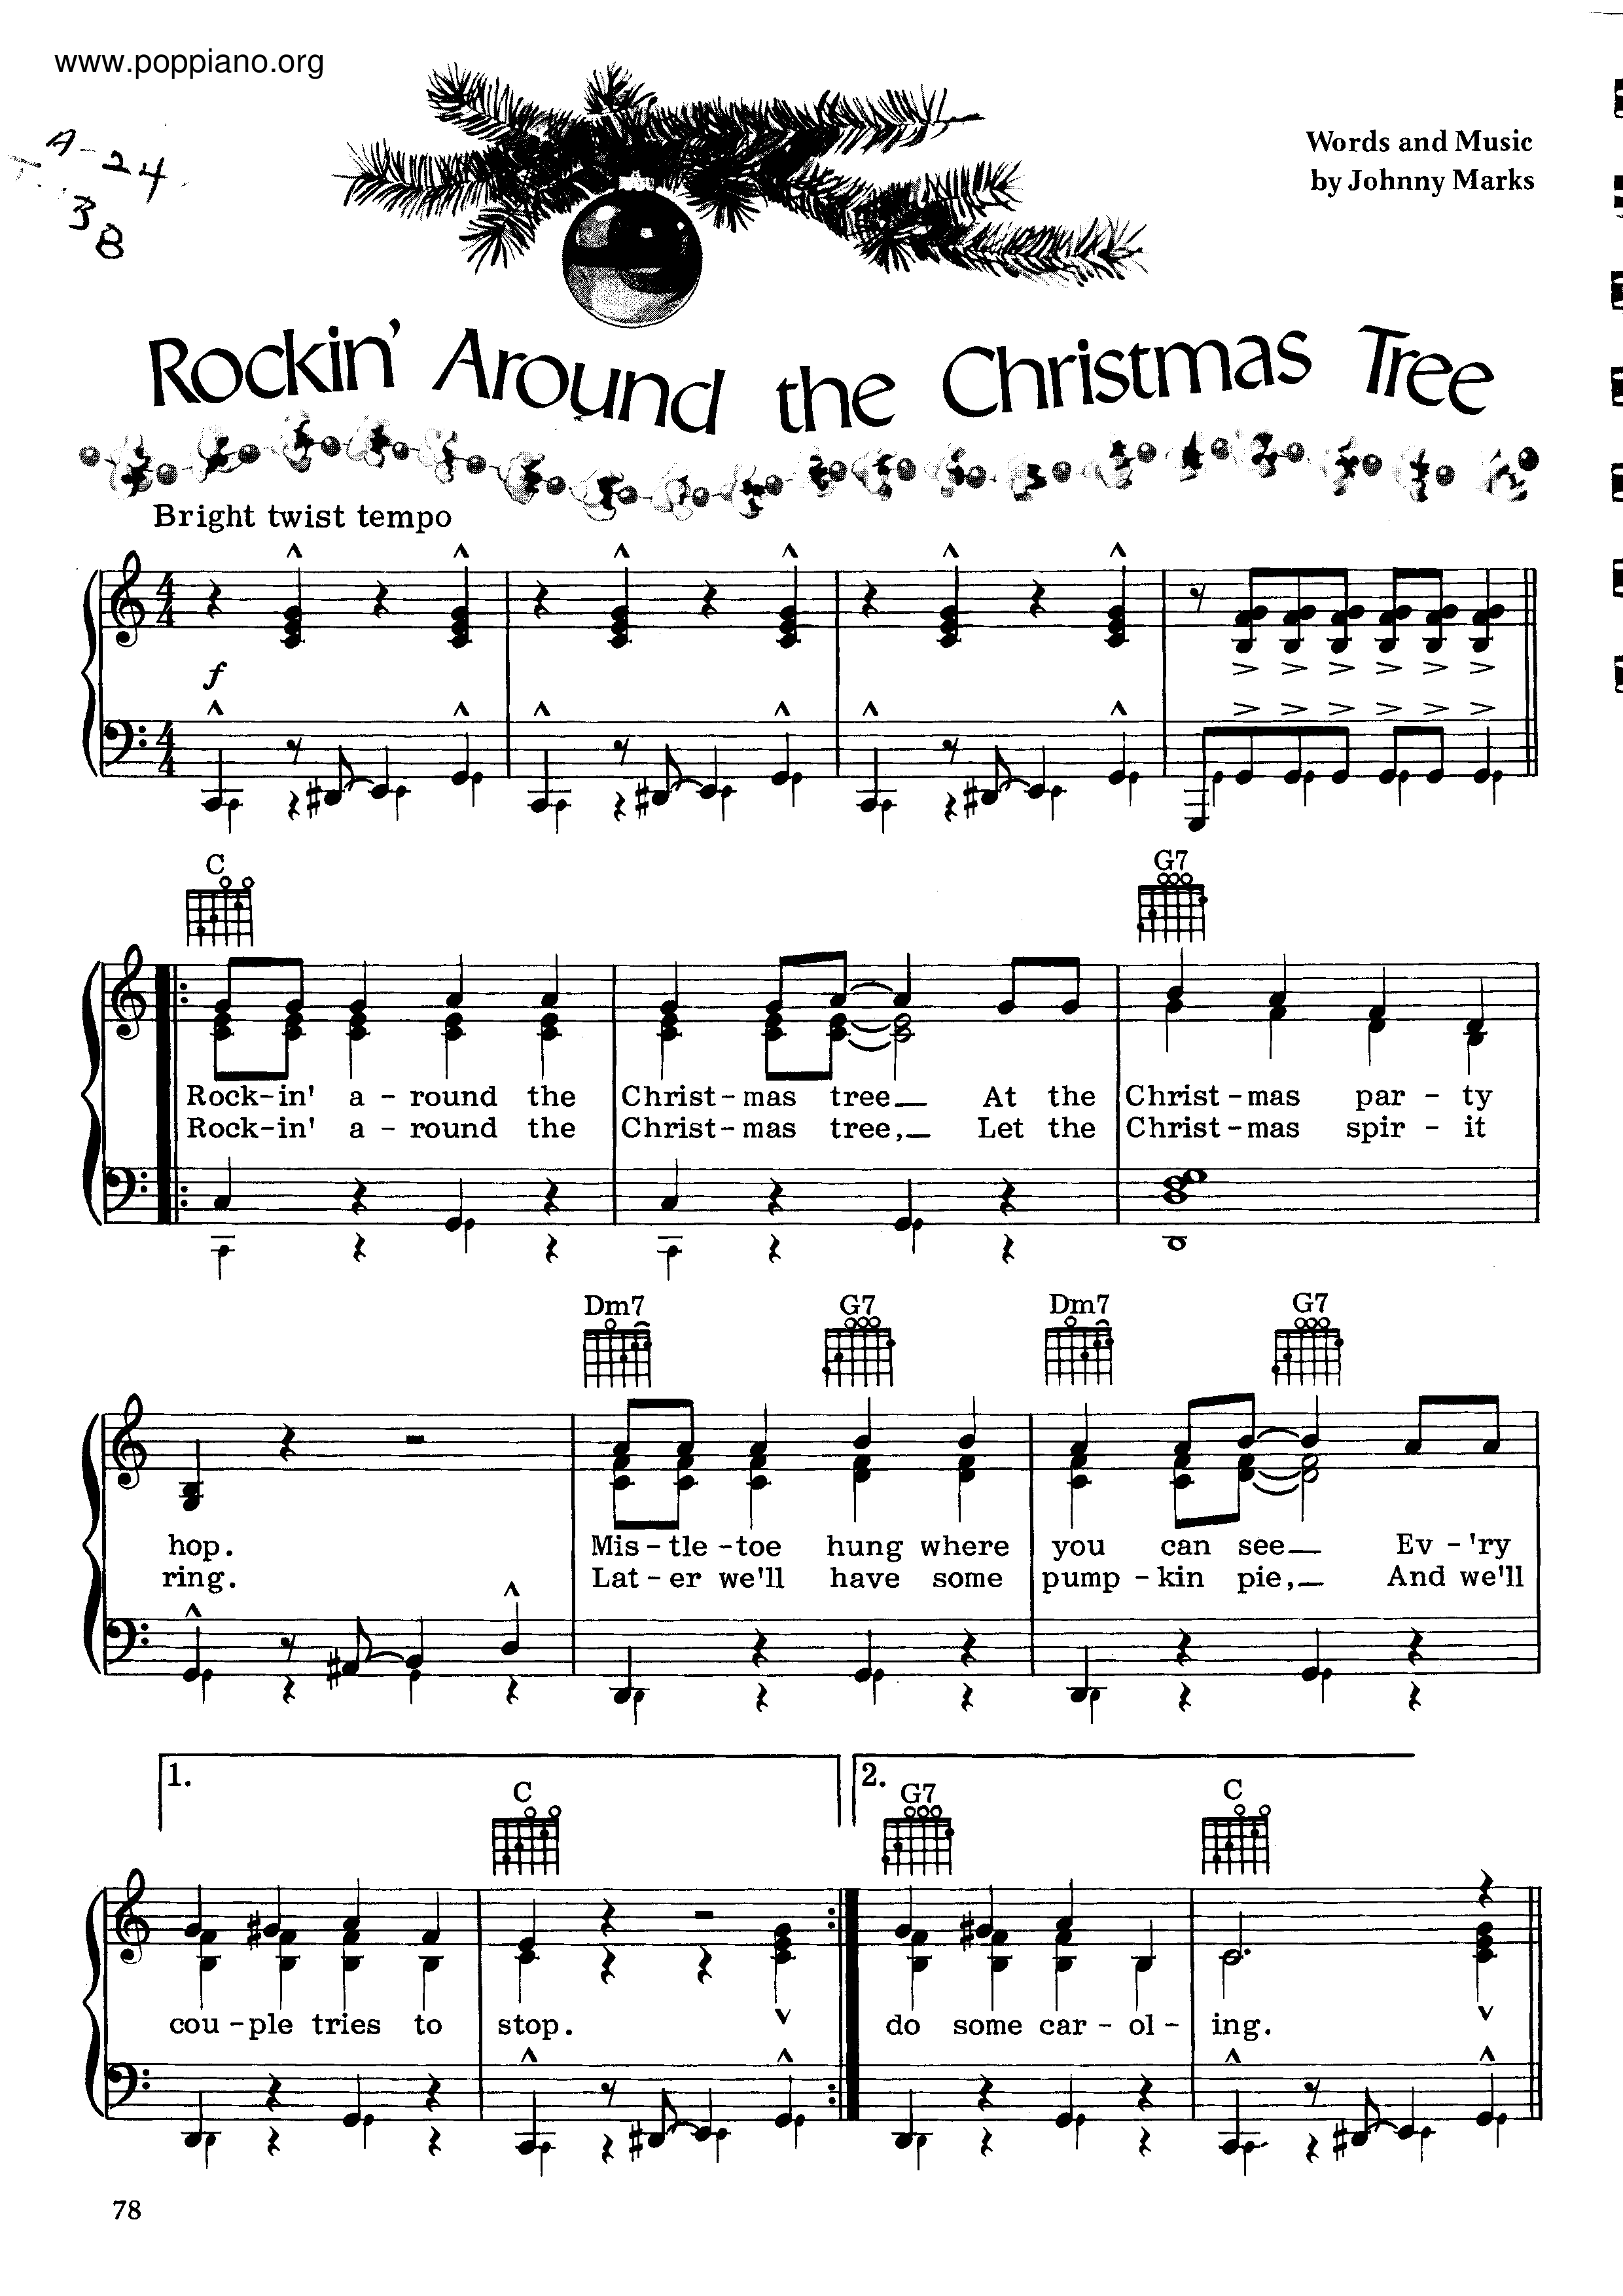 Rockin' Around The Christmas Tree Score